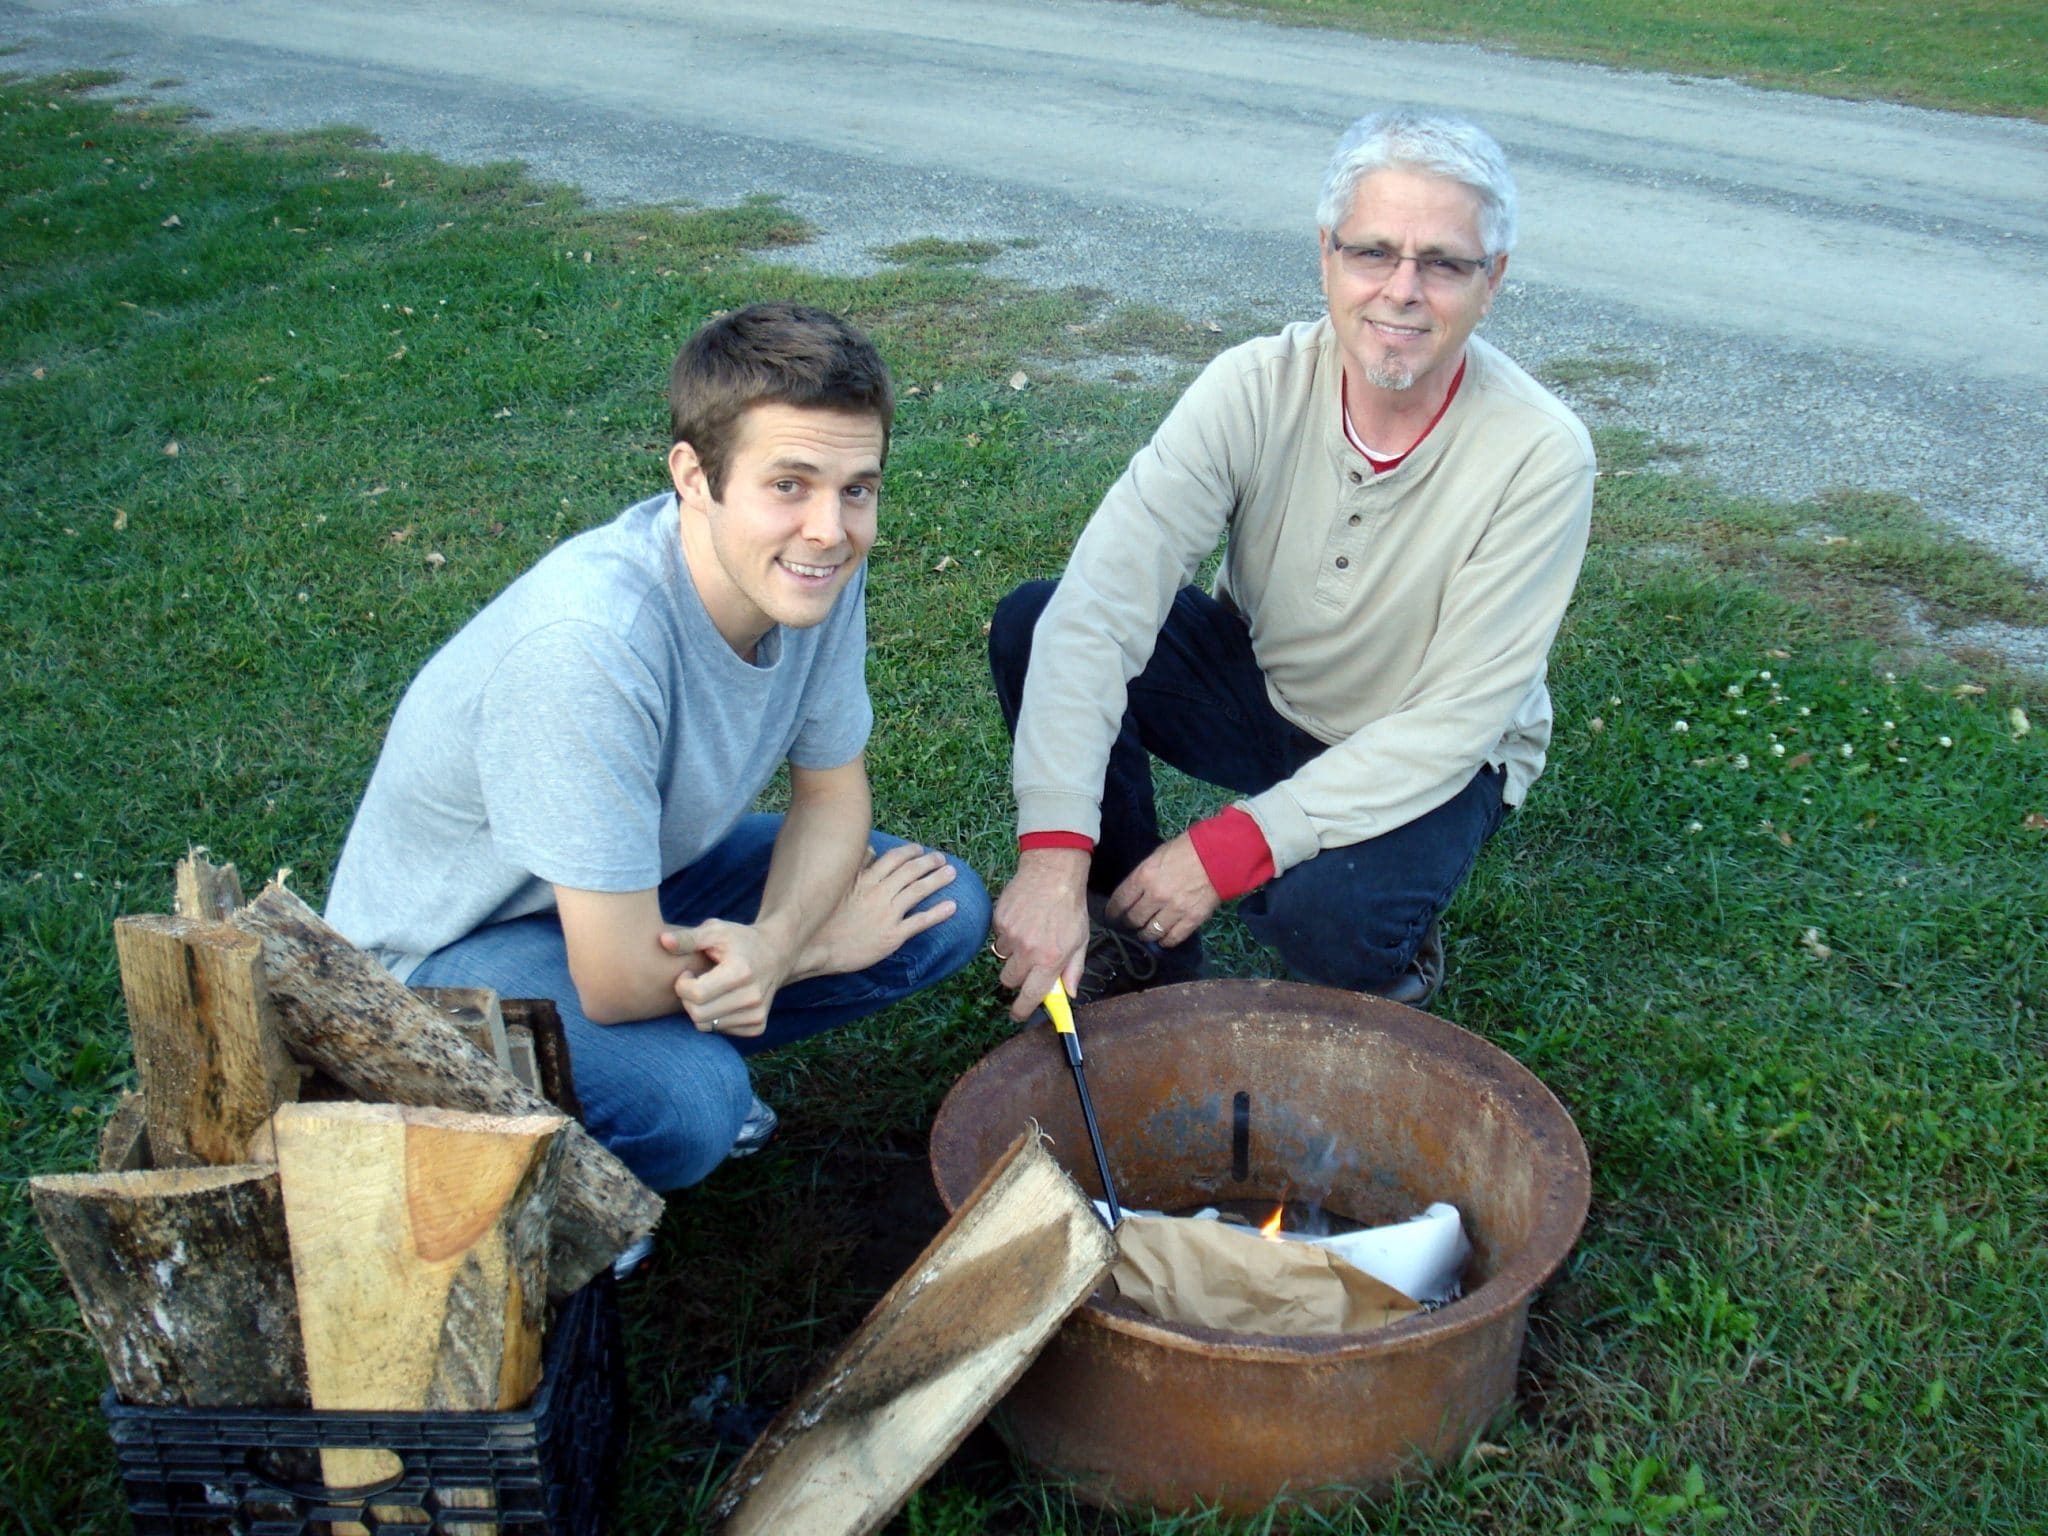 Matt and dad building a fire